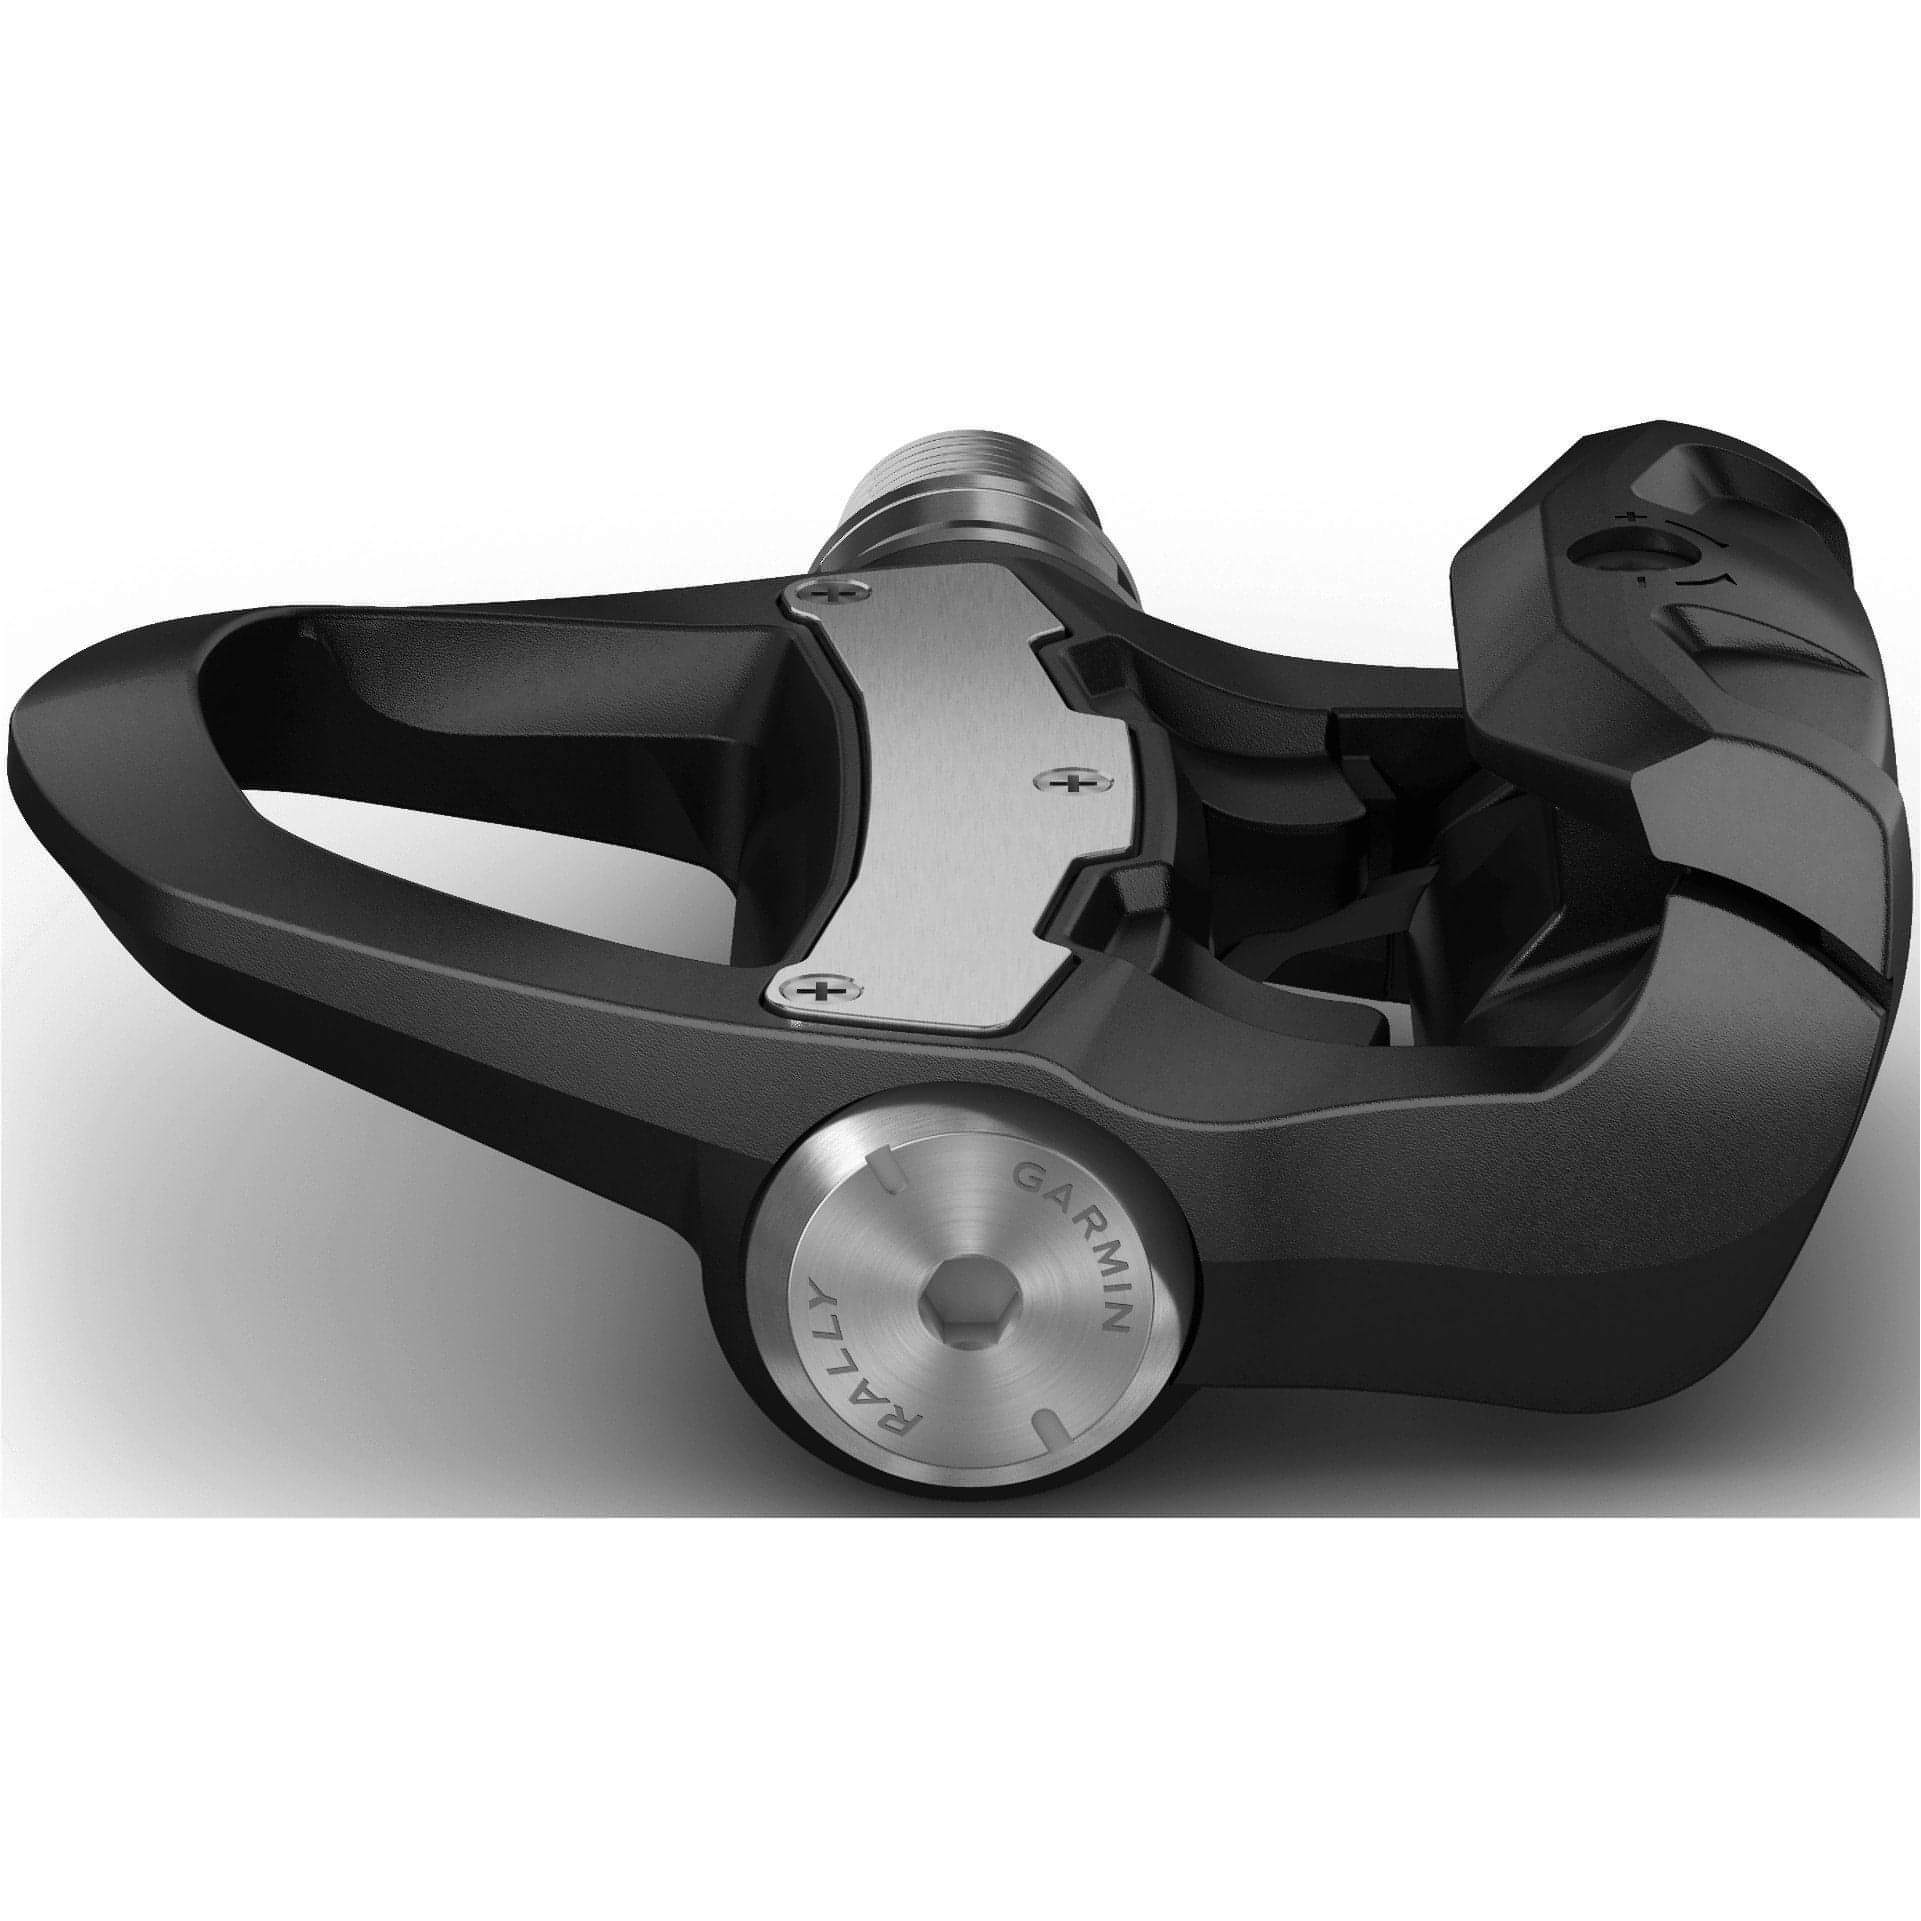 Garmin Rally RK200 Dual-sensing Power Meter Pedals - Look Keo 753759253592 - Start Fitness